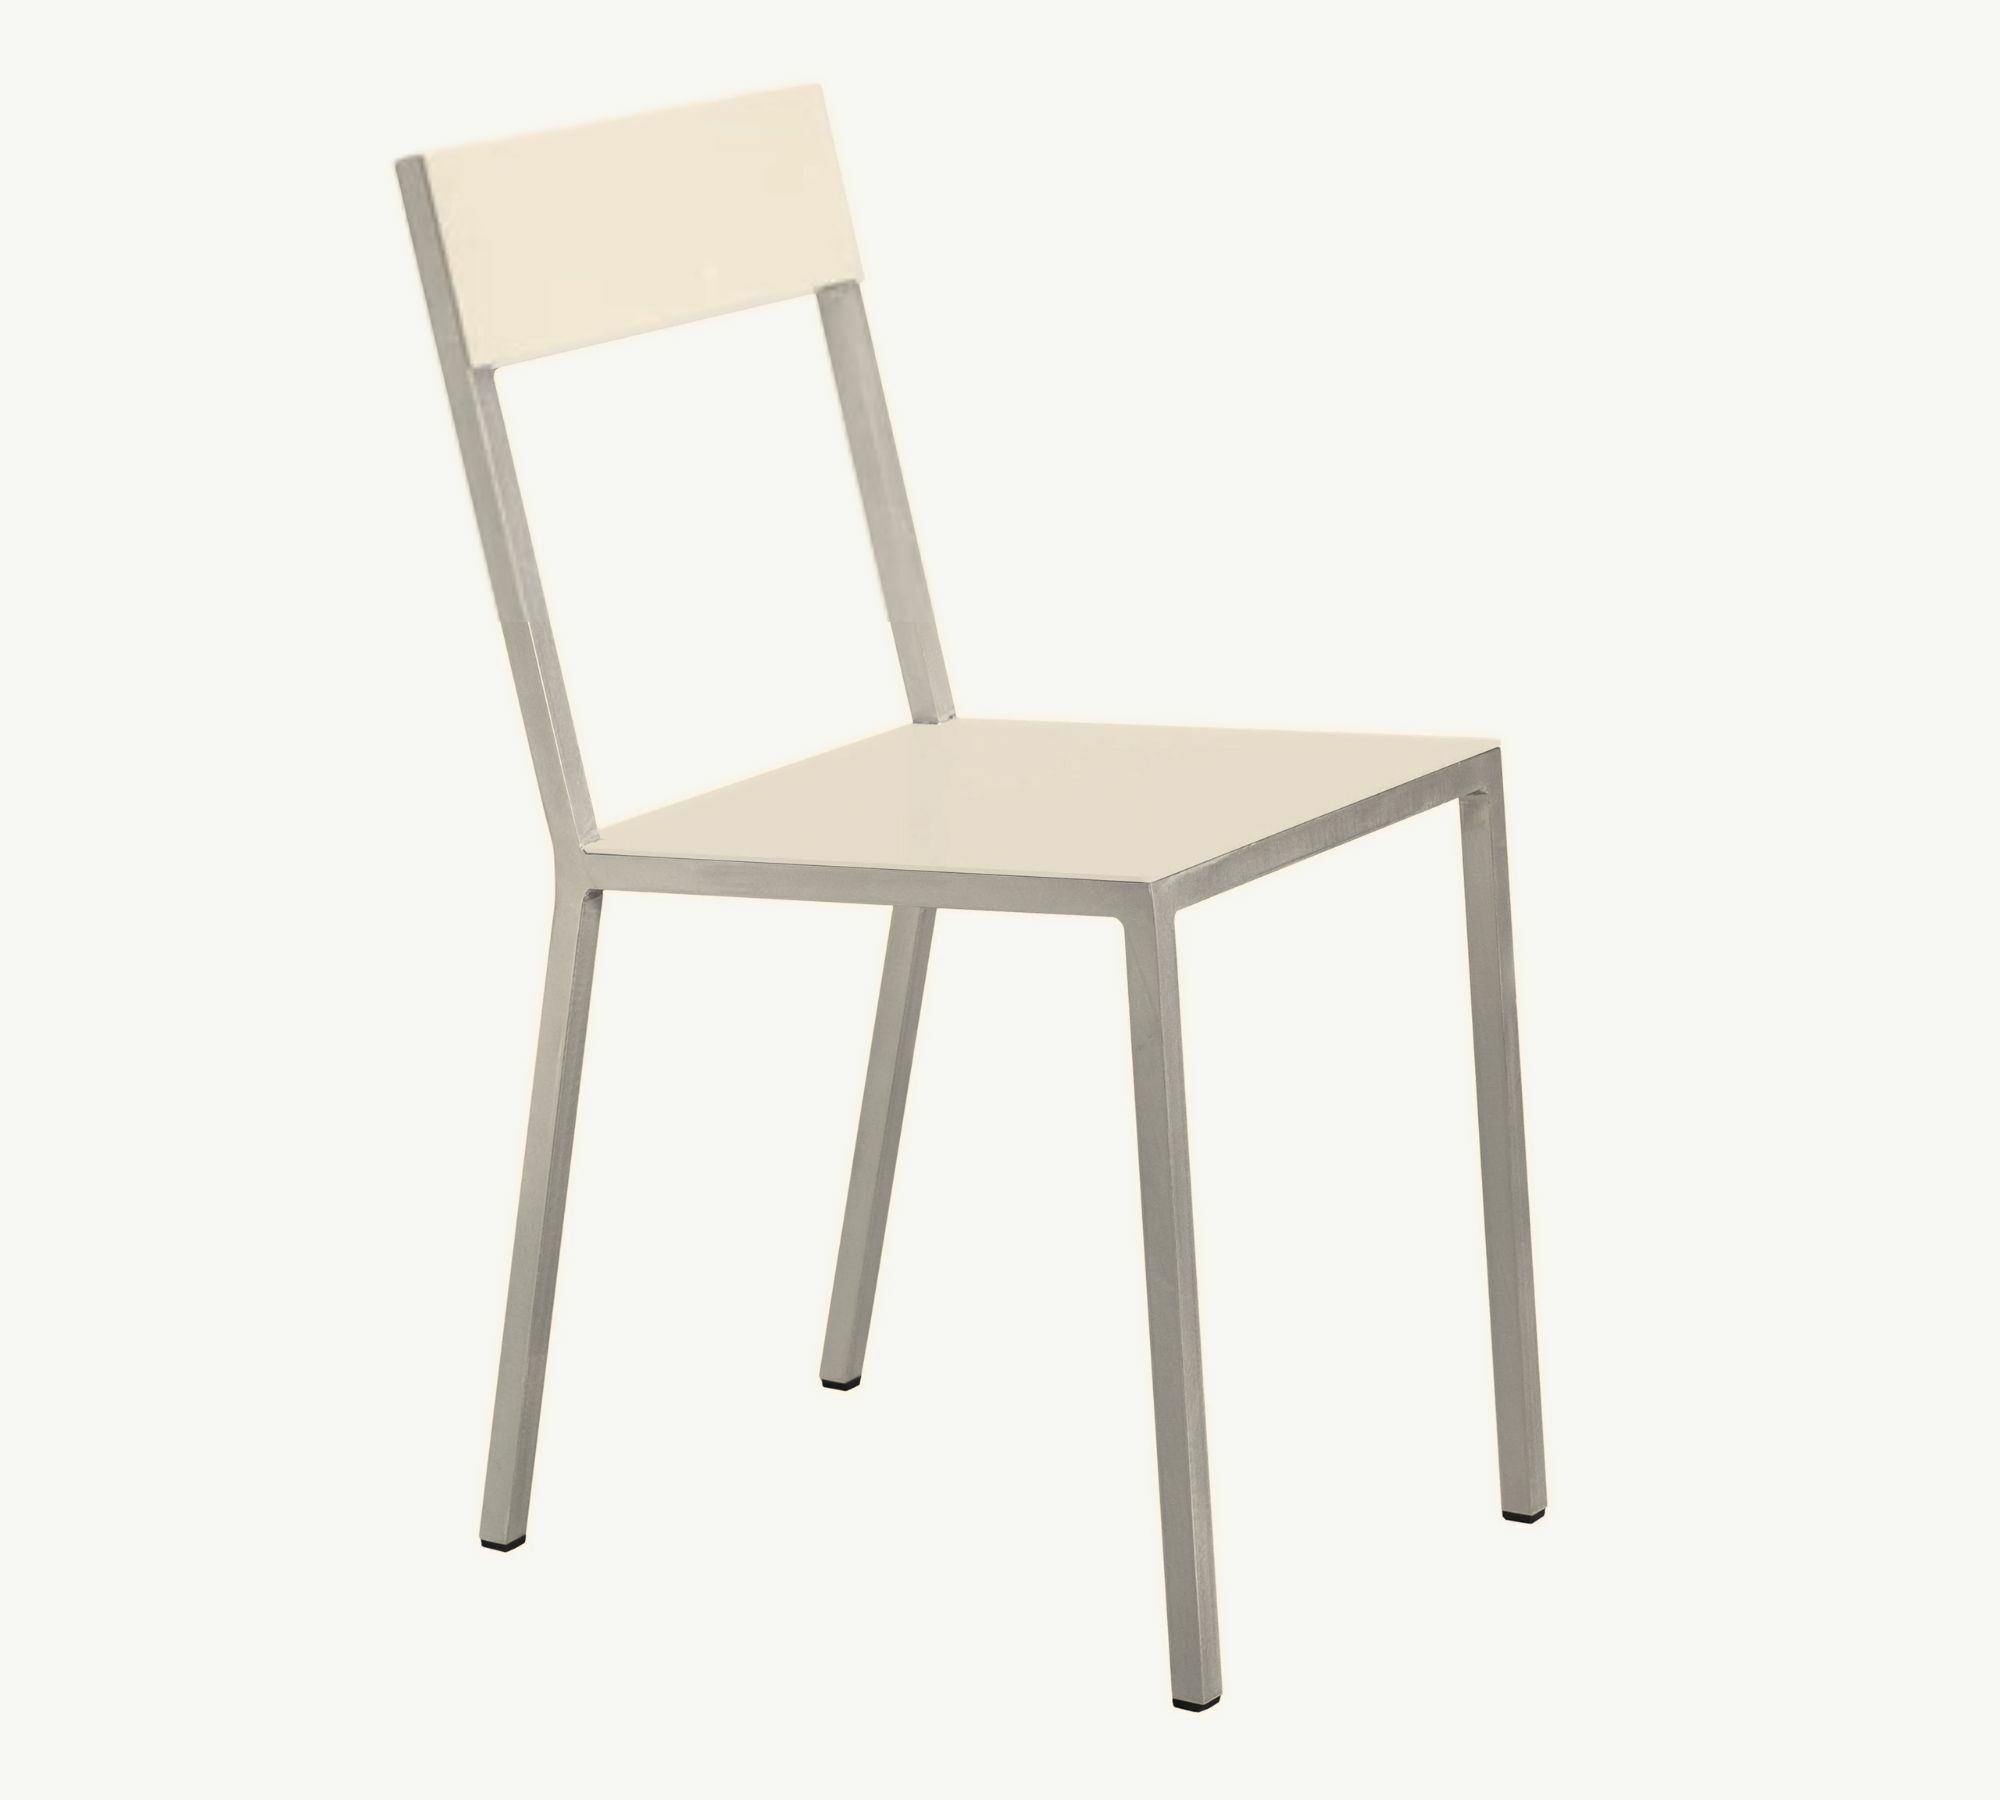 Alu Chair Stuhl Metall Creme 0